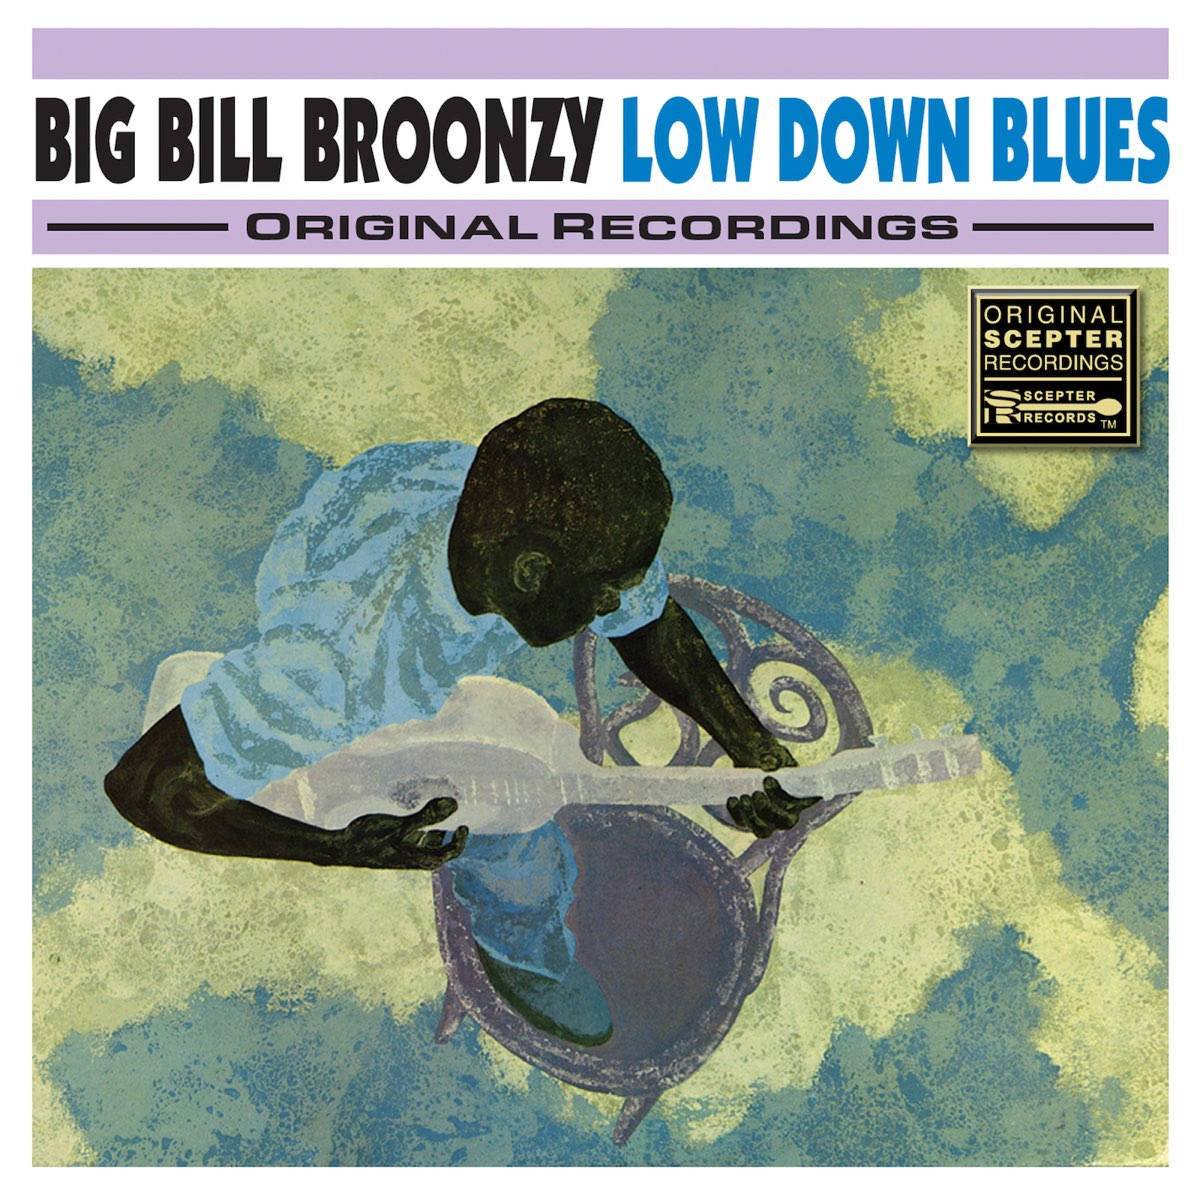 Big Bill Broonzy Low Down Blues Wallpaper